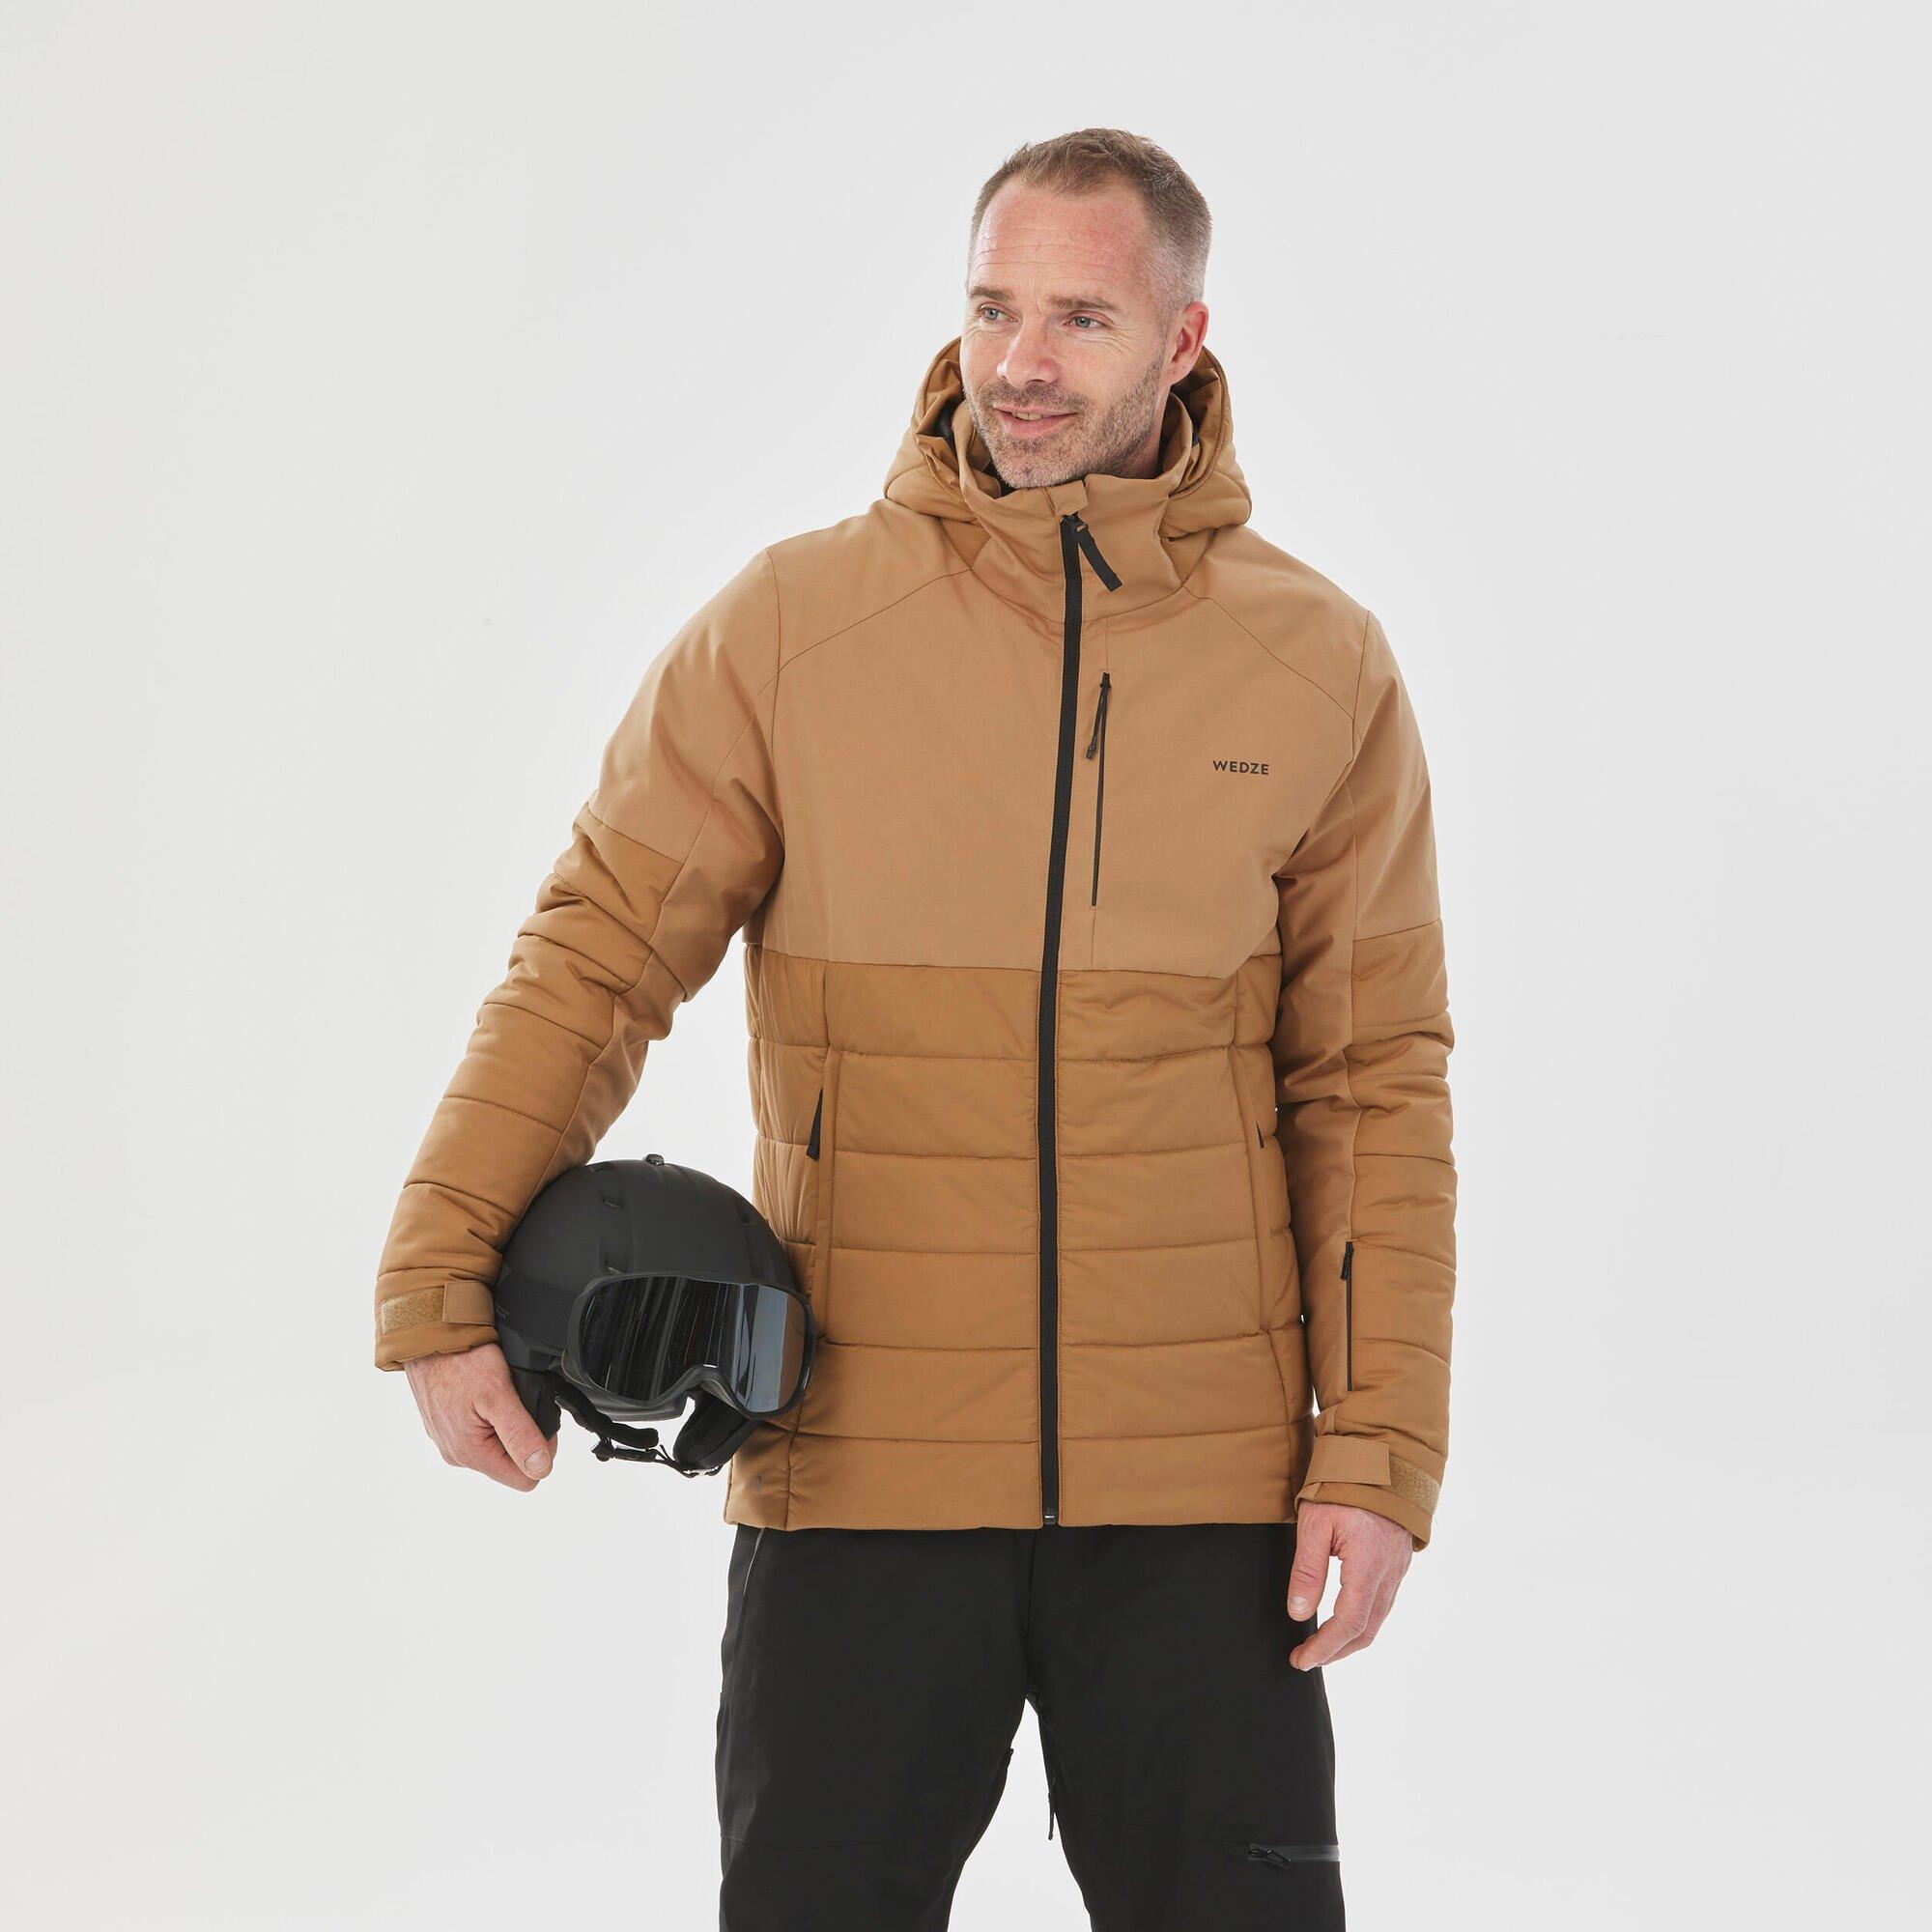 Теплая лыжная куртка средней длины Decathlon 100 Wedze, коричневый